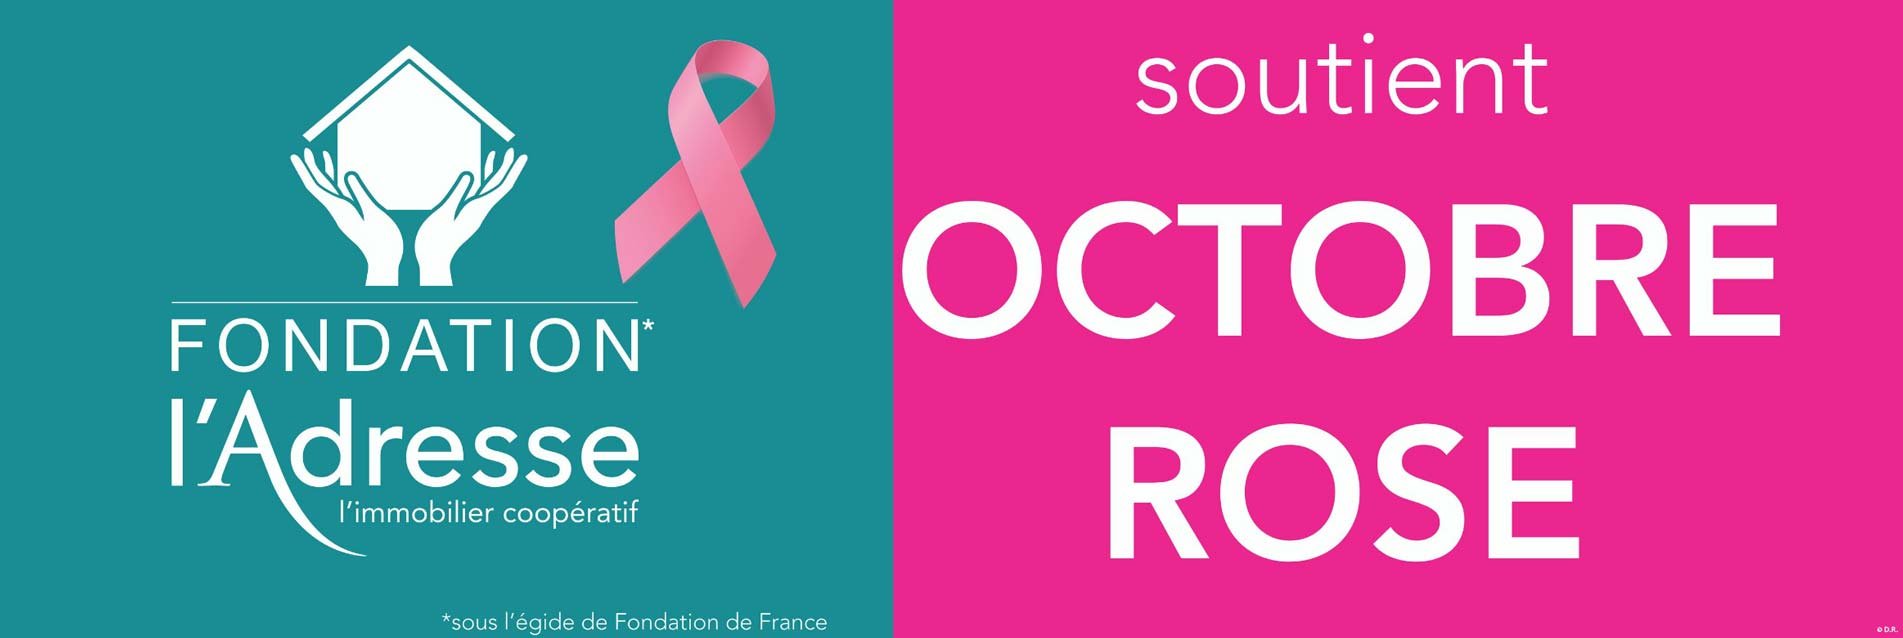 Pour la seconde année consécutive, la Fondation l’Adresse soutient l’association Rose Up pour Octobre Rose